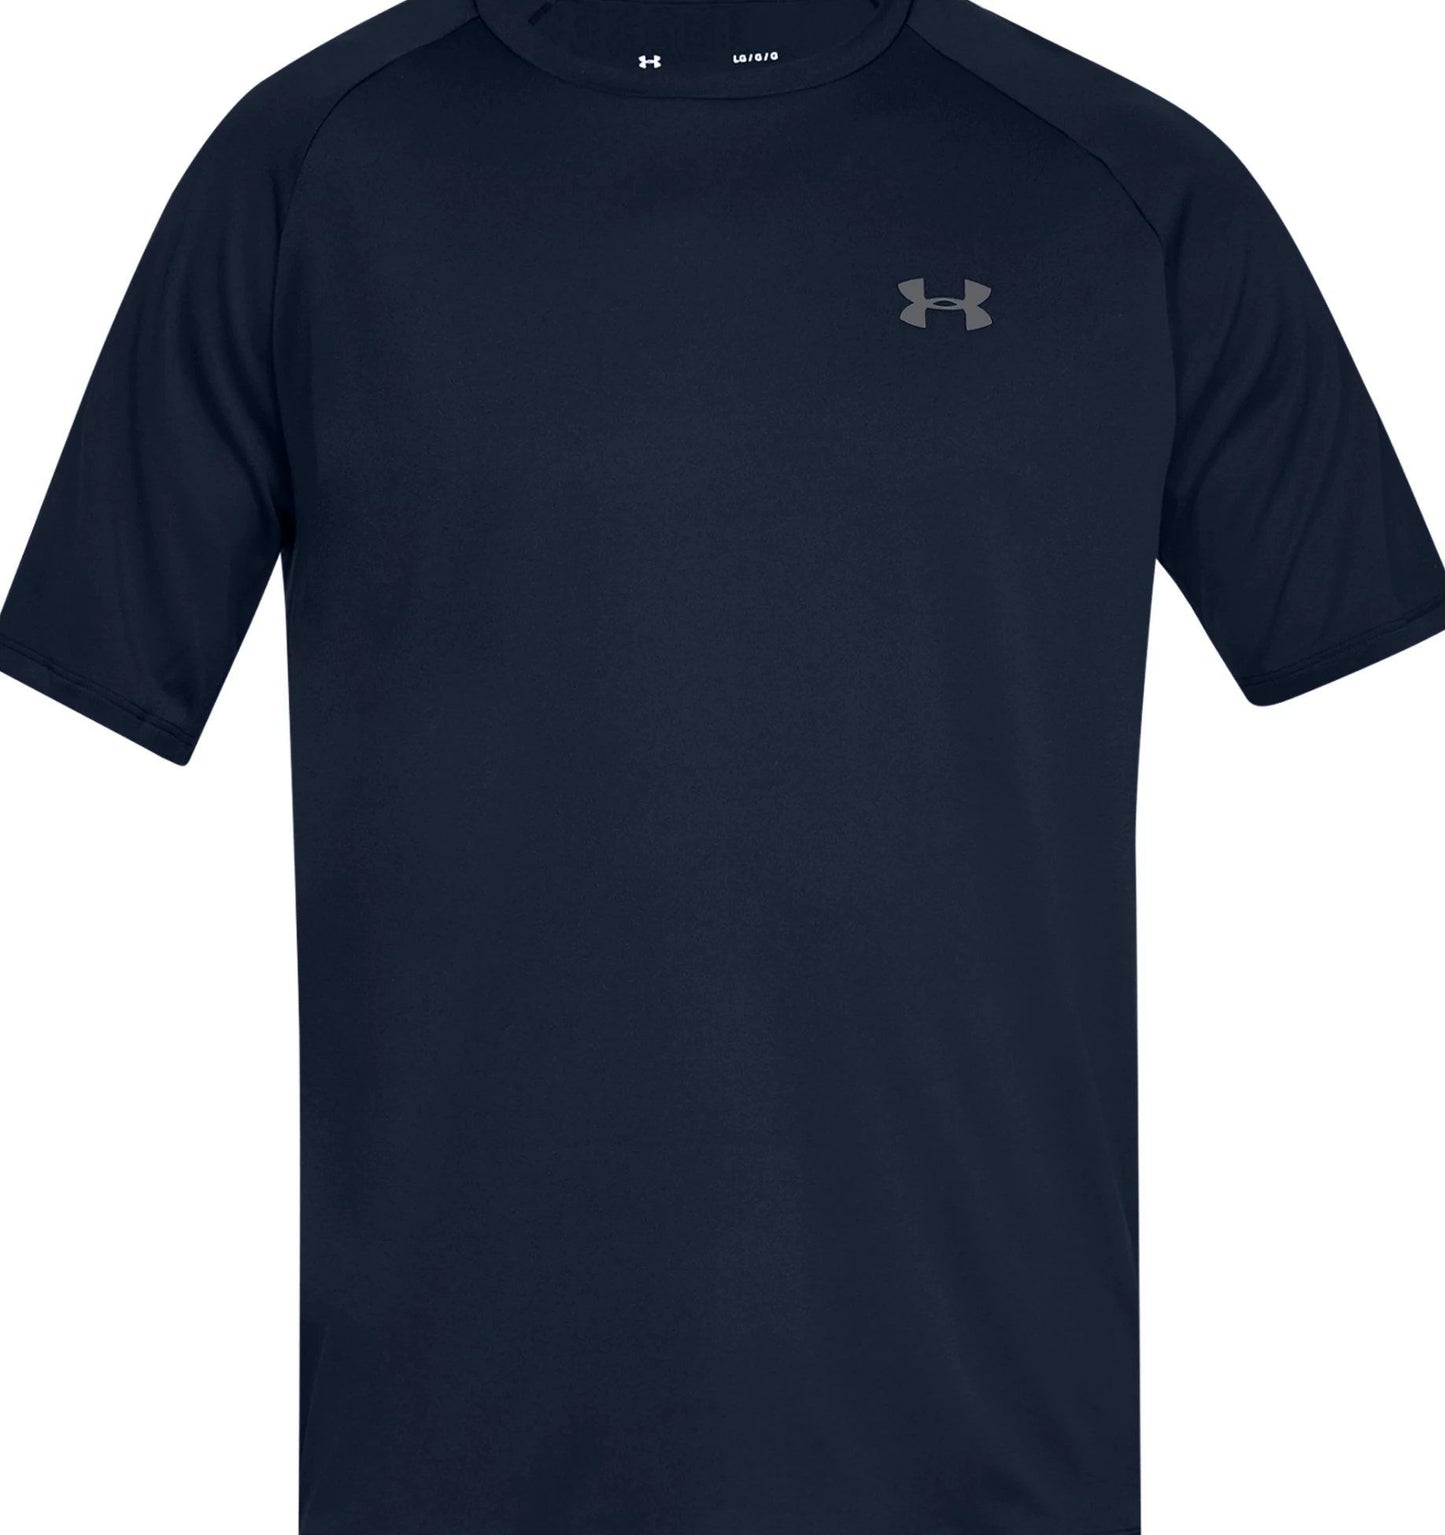 Under Armour Tech 2.0 Short Sleeve Shirt-Tac Essentials